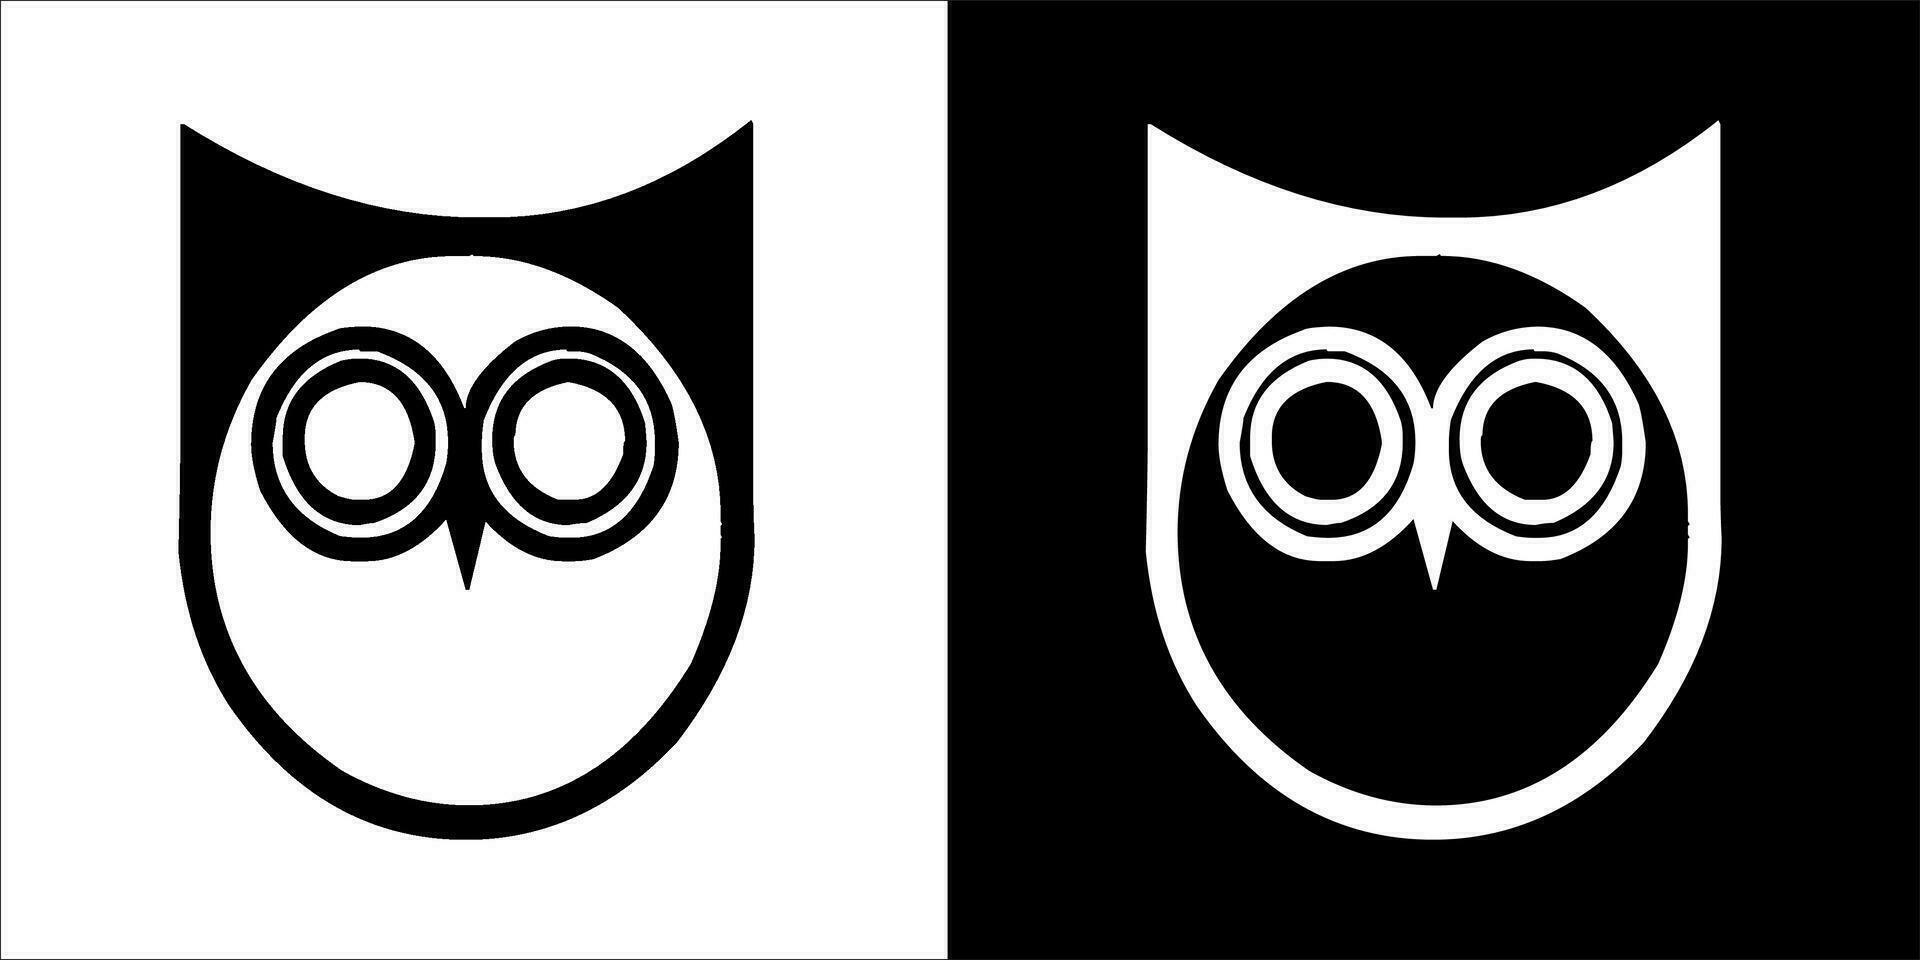 ilustração, vetor gráfico do coruja ícone, dentro Preto e branco, com transparente fundo